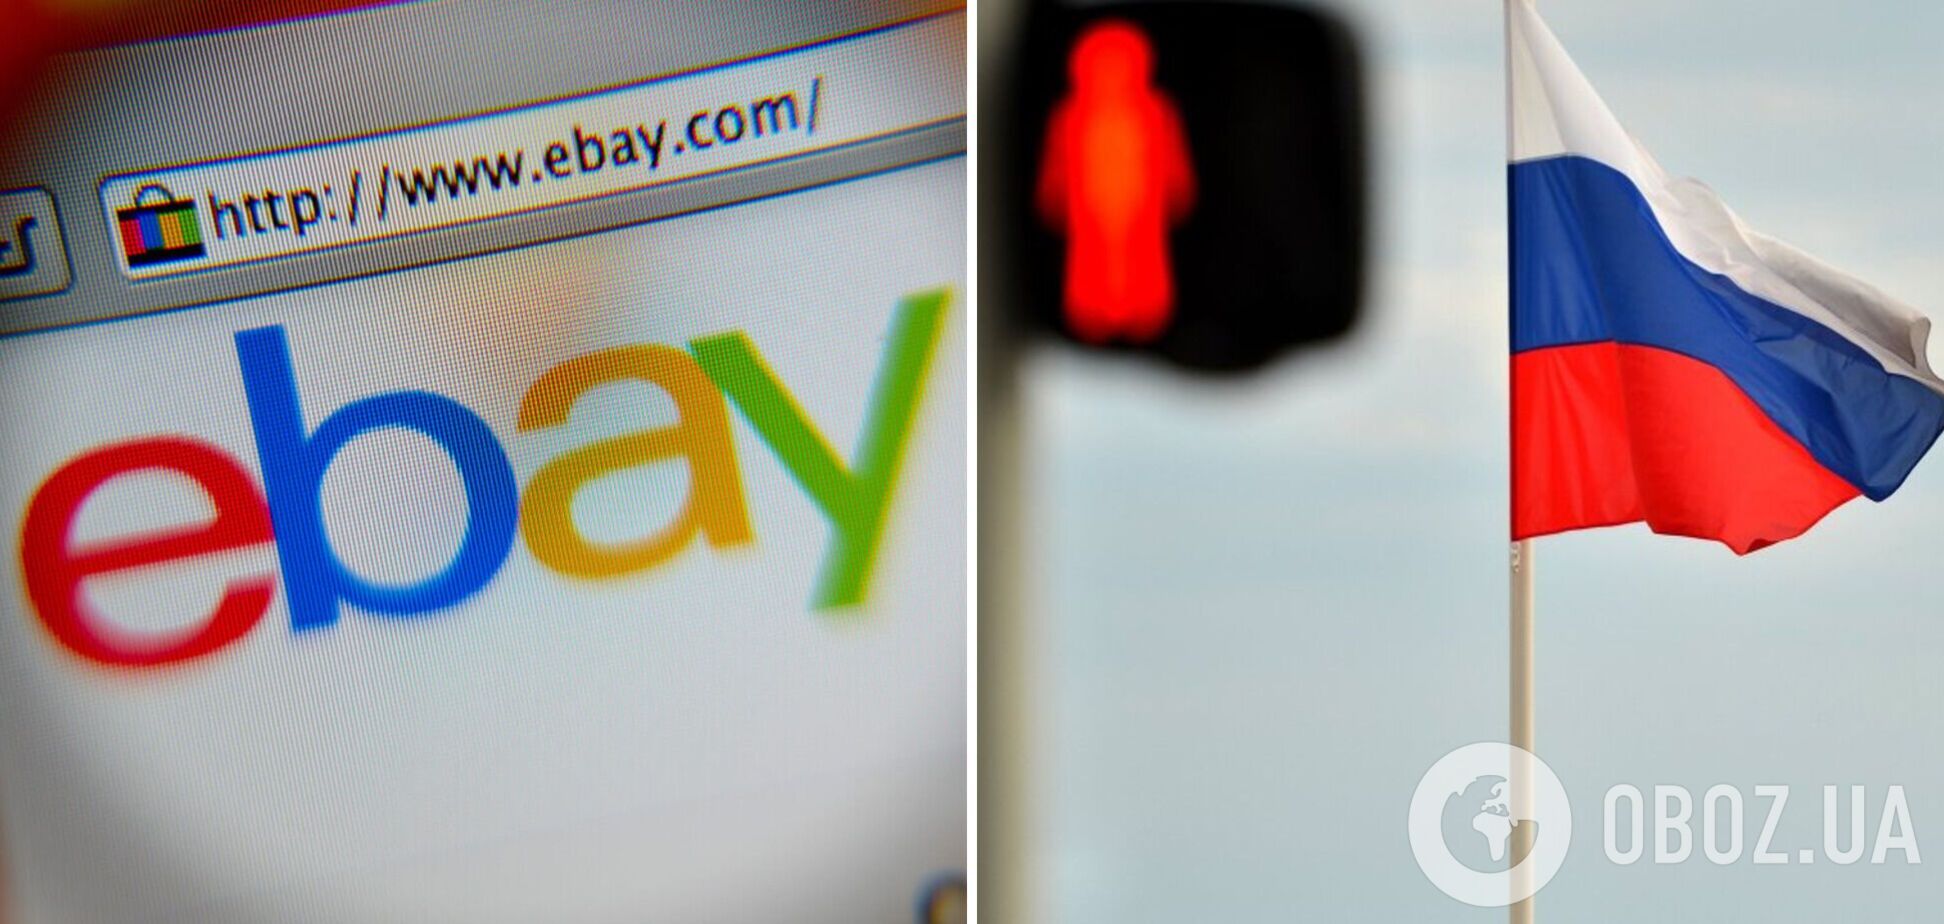 eBay запретил торговать продавцам из России